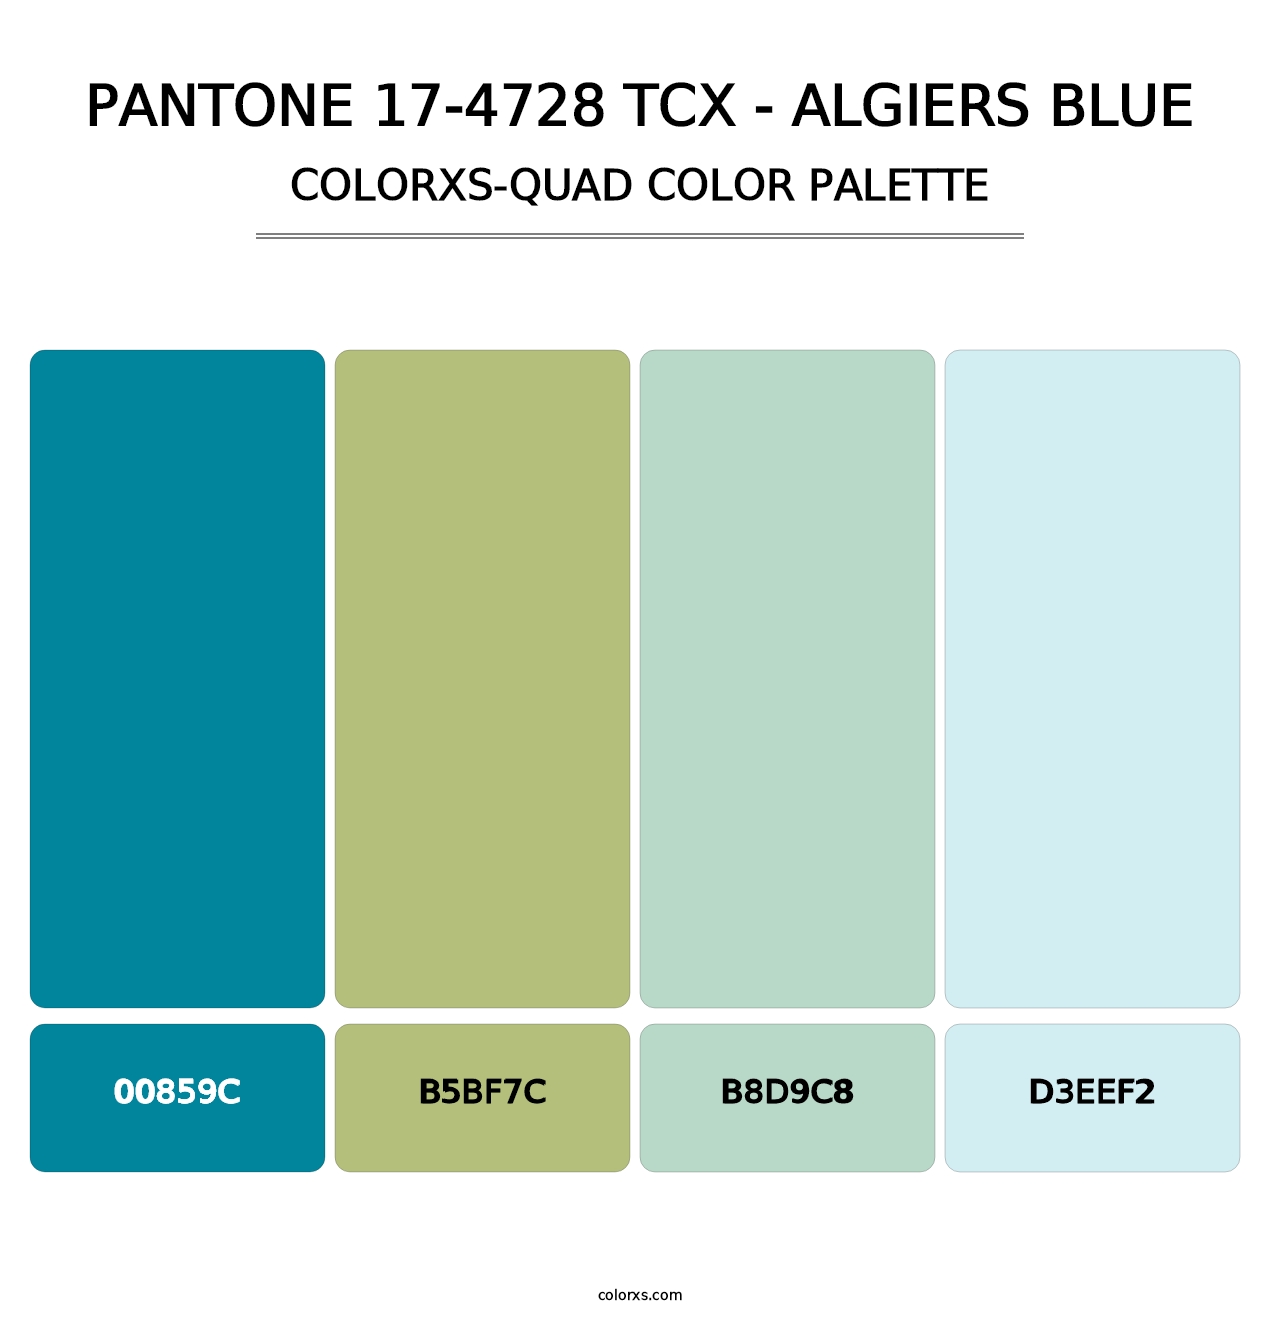 PANTONE 17-4728 TCX - Algiers Blue - Colorxs Quad Palette